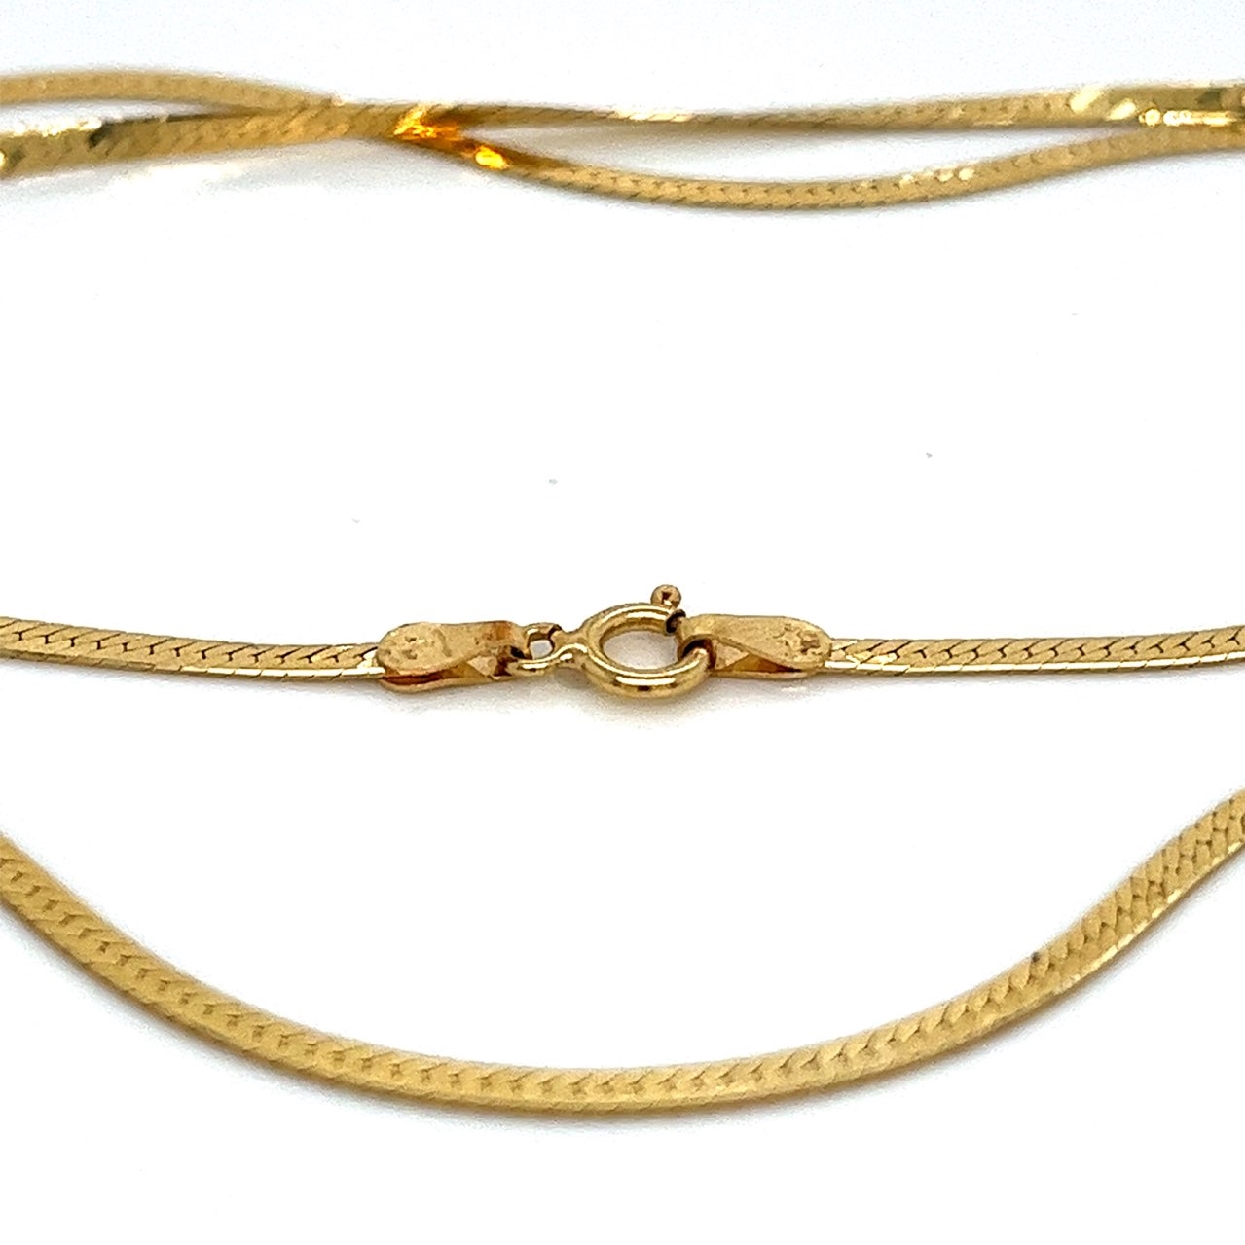 18K Yellow Gold Herringbone Chain
18 Inches